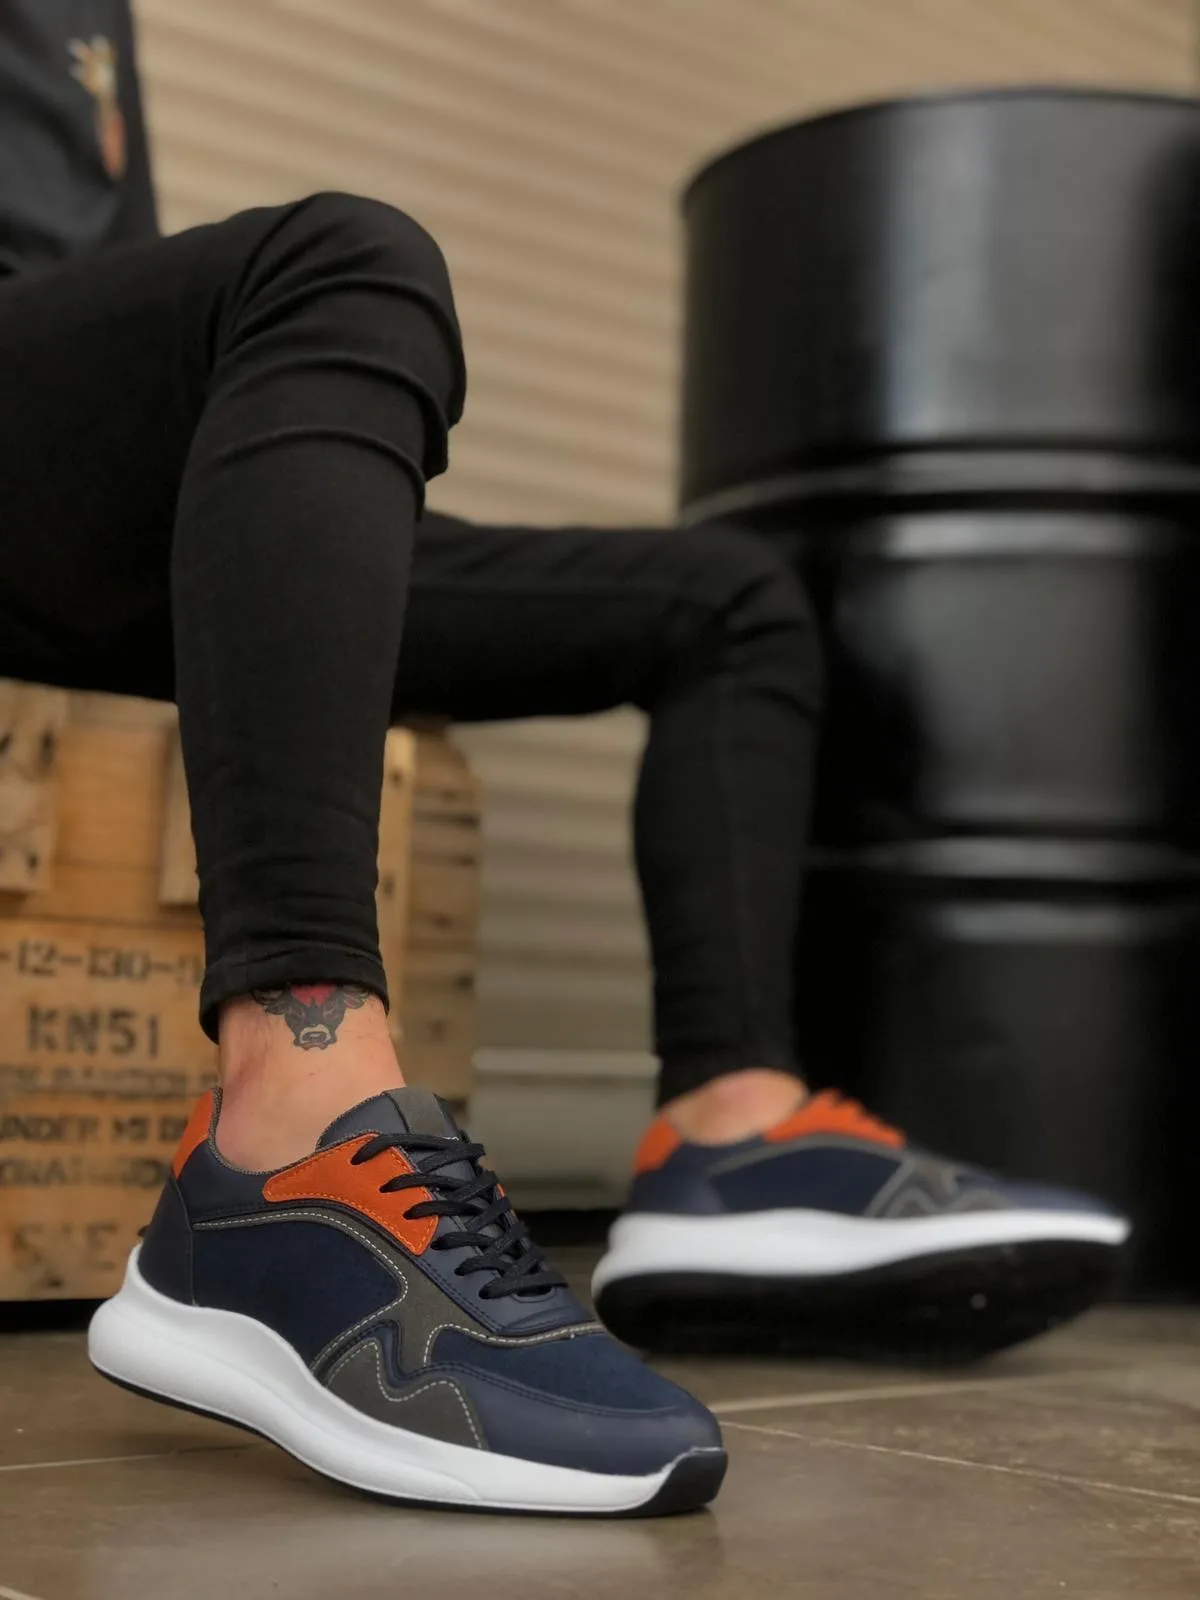 

Мужские кроссовки BOA, повседневная обувь темно-синего, оранжевого, серого цвета с высокой белой подошвой, со шнуровкой, стильный оригинальны...